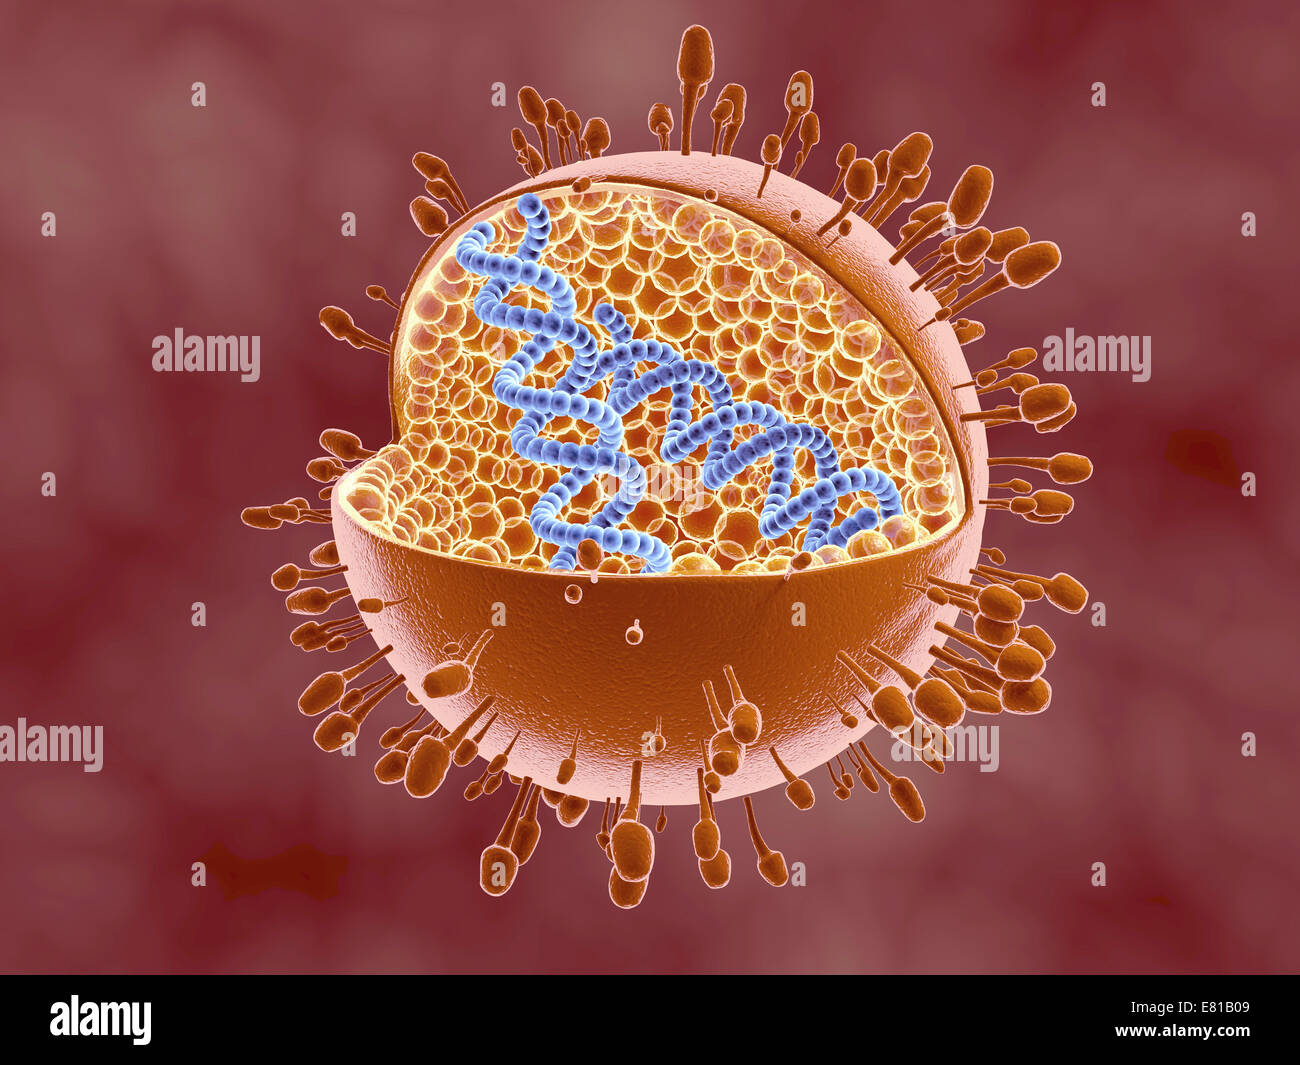 Querschnittsansicht der Reoviridae Virus Dna innen zeigt. Reoviruses kann das Gastronintestinal System und die Atemwege beeinträchtigen. Stockfoto